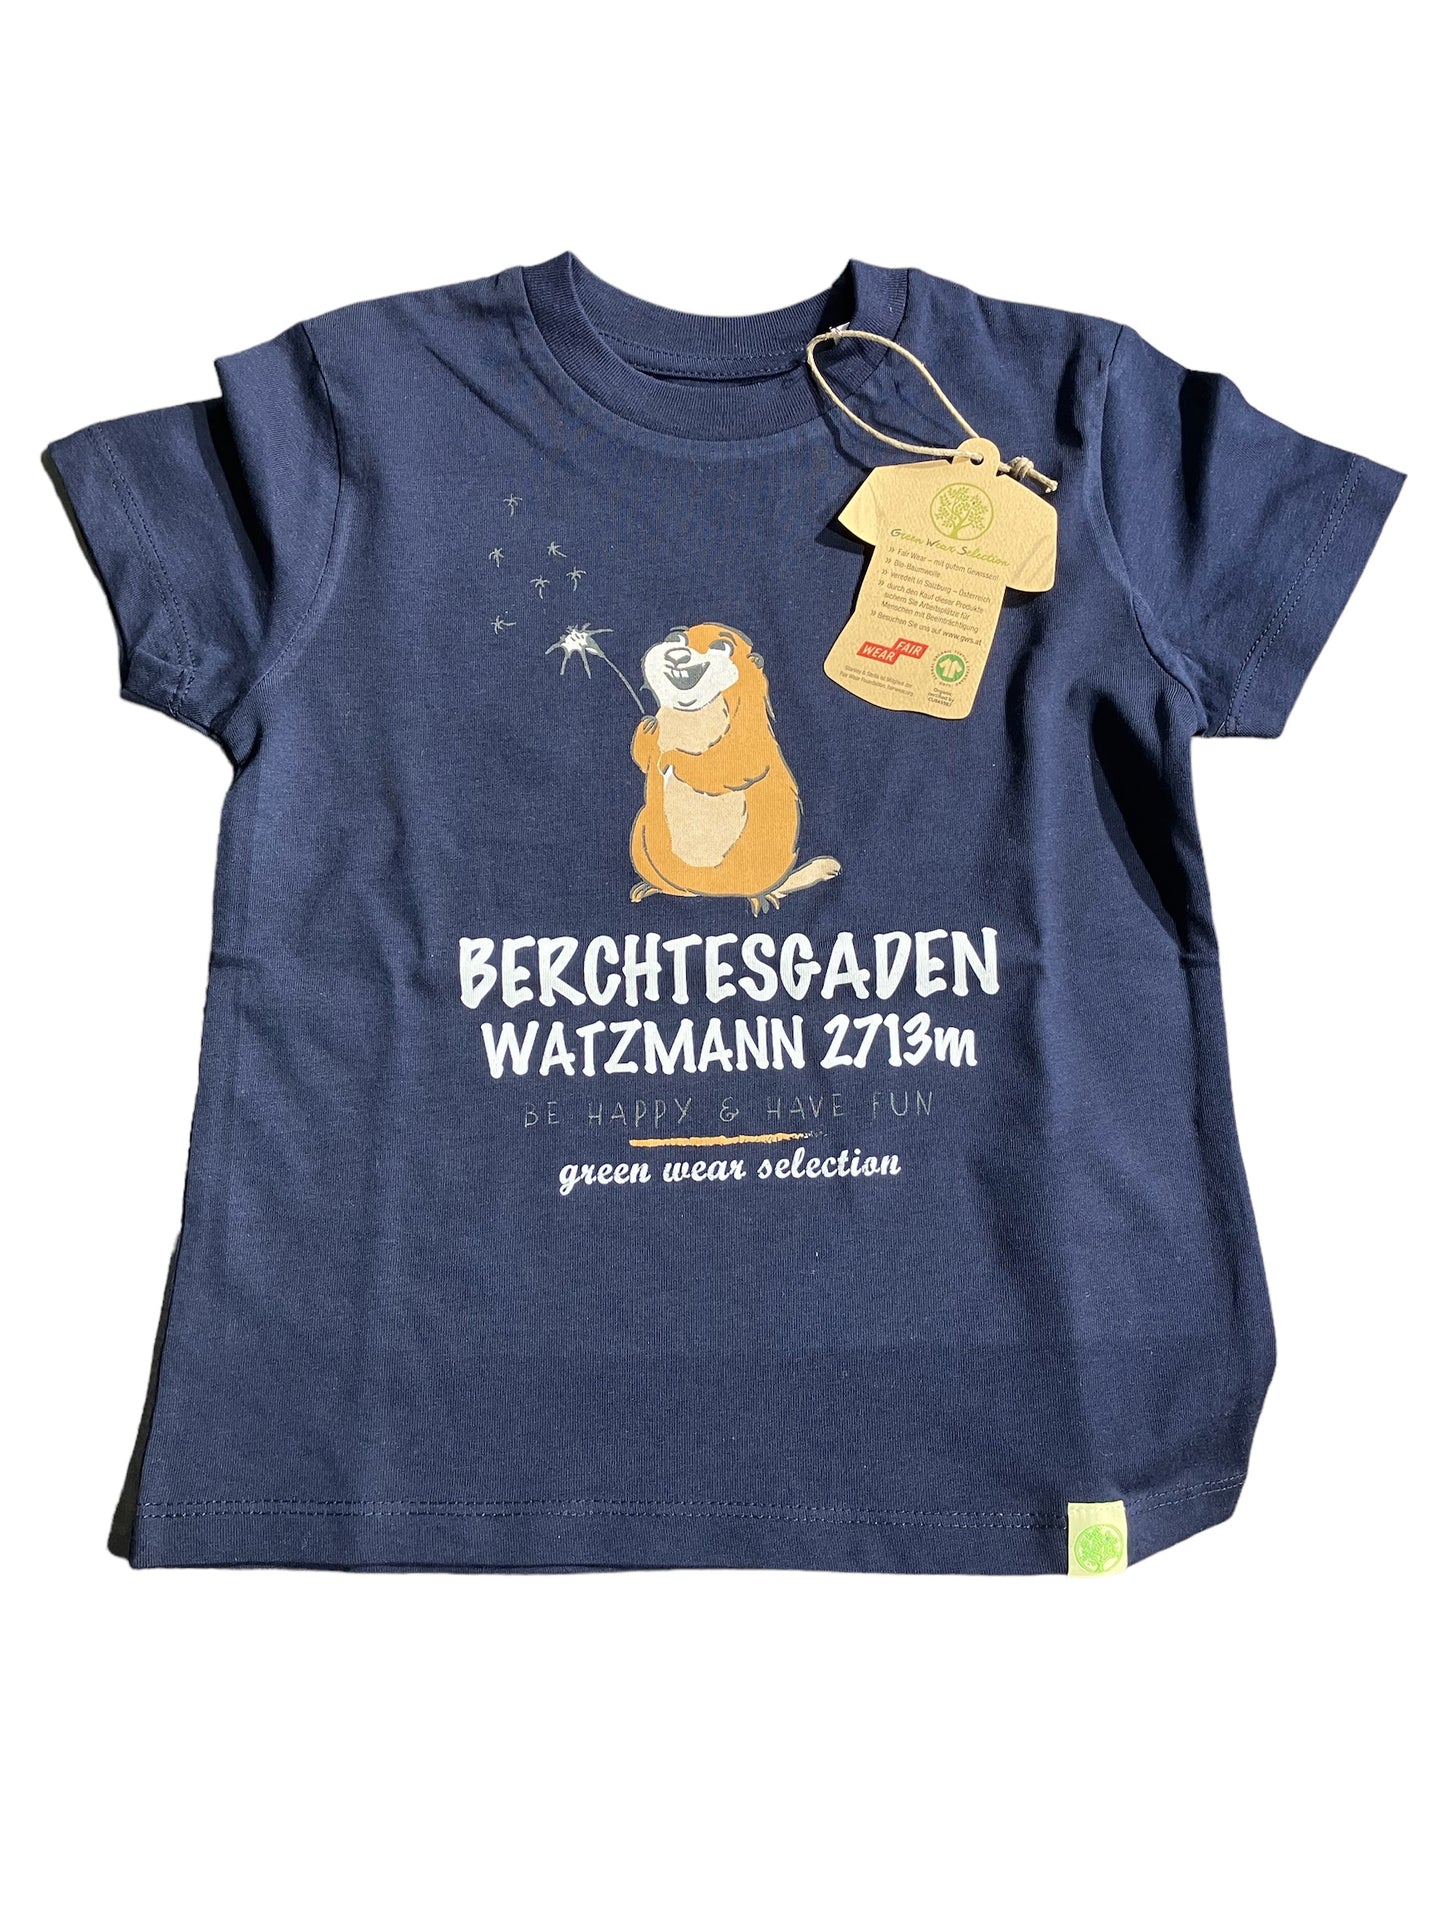 Kinder T-Shirt Berchtesgaden Watzmann